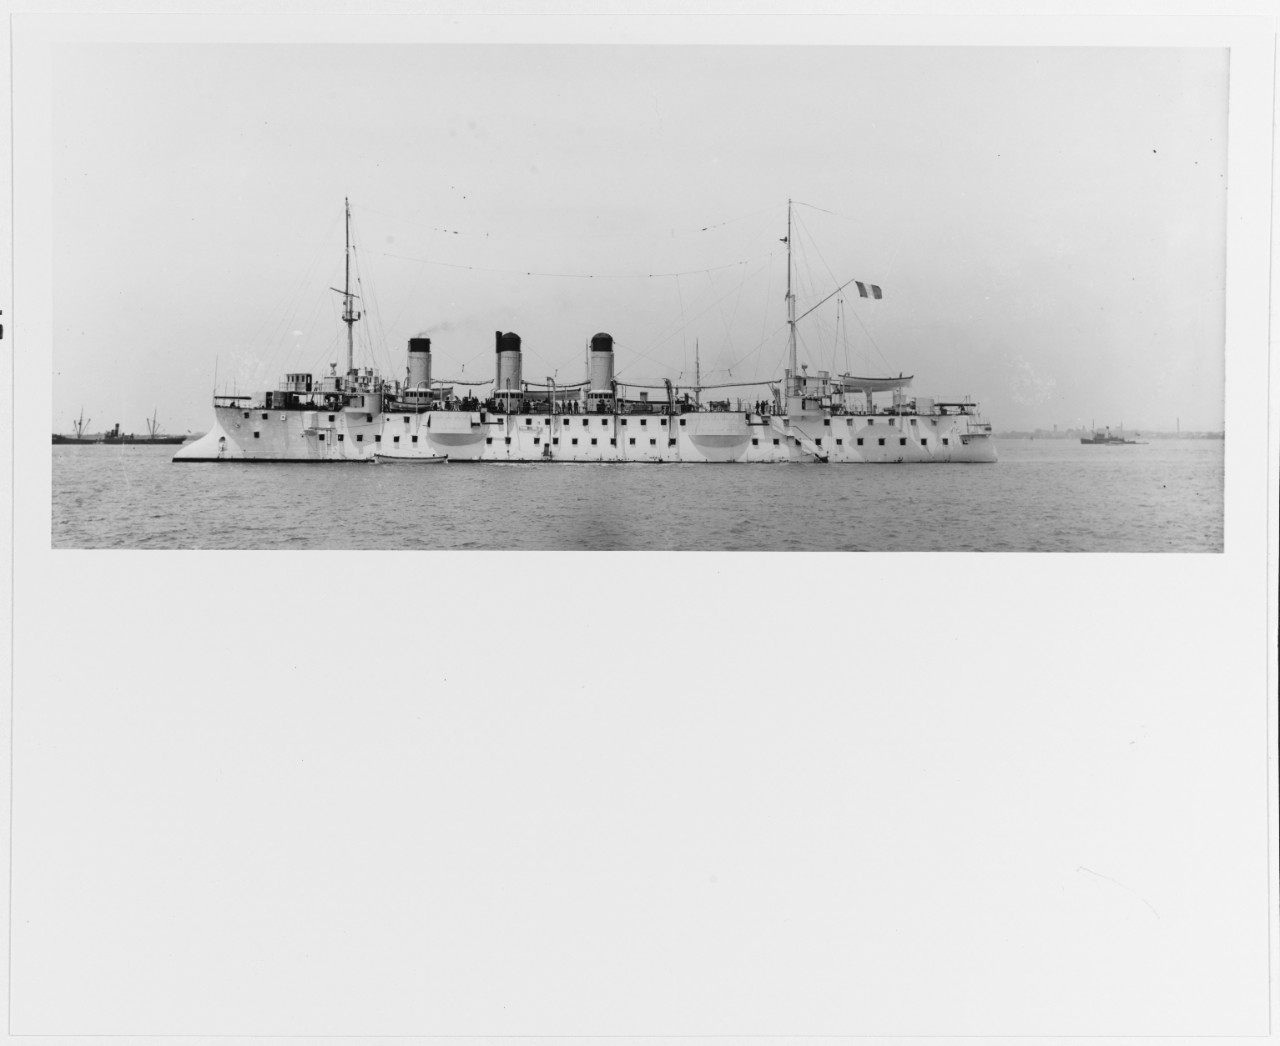 CHASSELOUP-LAUBAT (French cruiser, 1893)